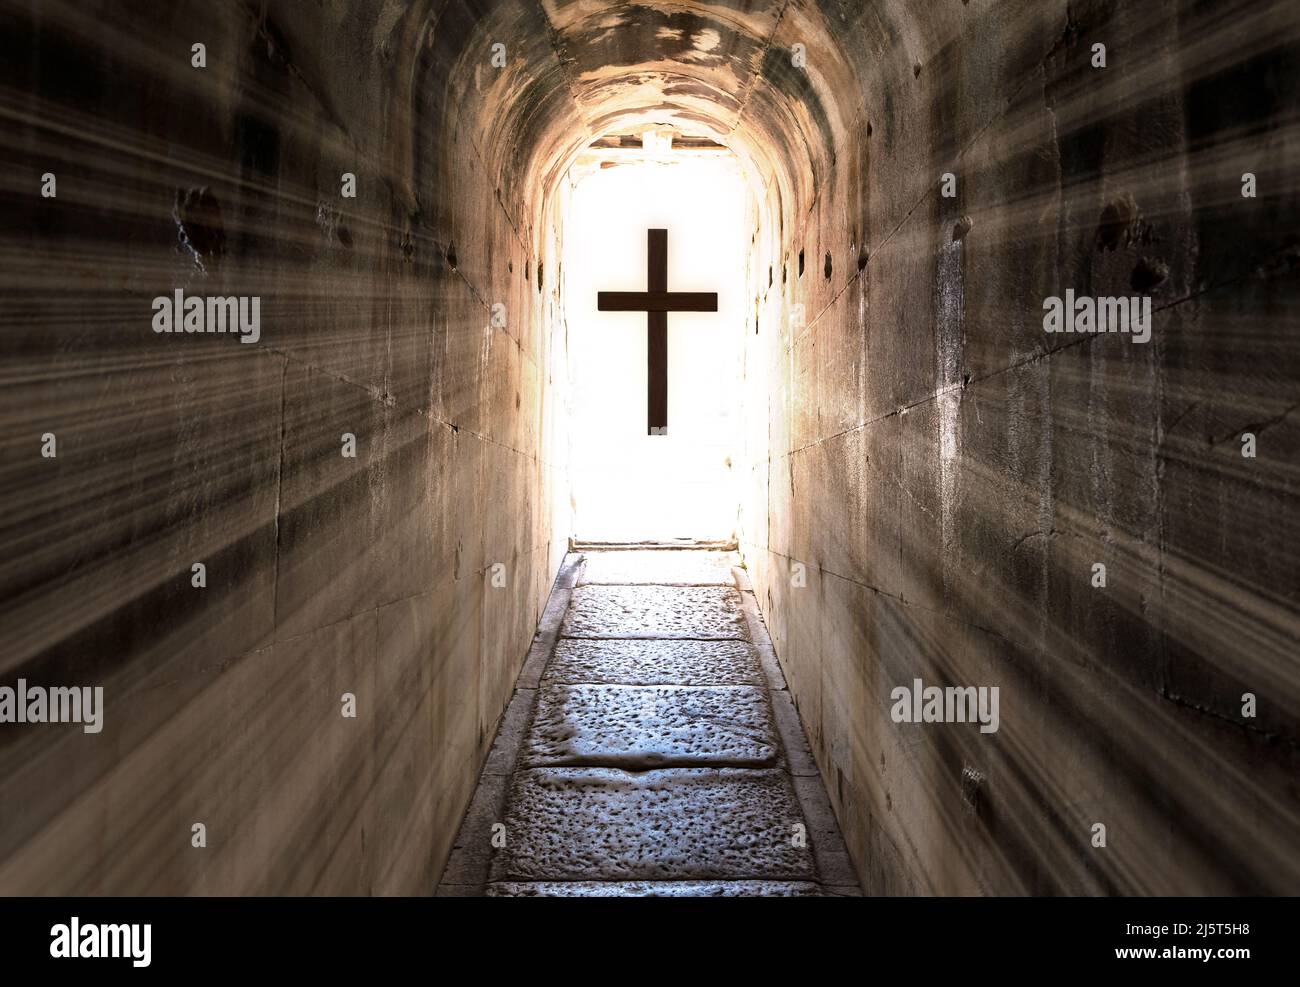 Dunkler Tunnelausgang und jesus christus Kreuz mit Hintergrundbeleuchtung. Konzept des Himmels nach dem christentum und des Lebens nach dem Tod. Stockfoto